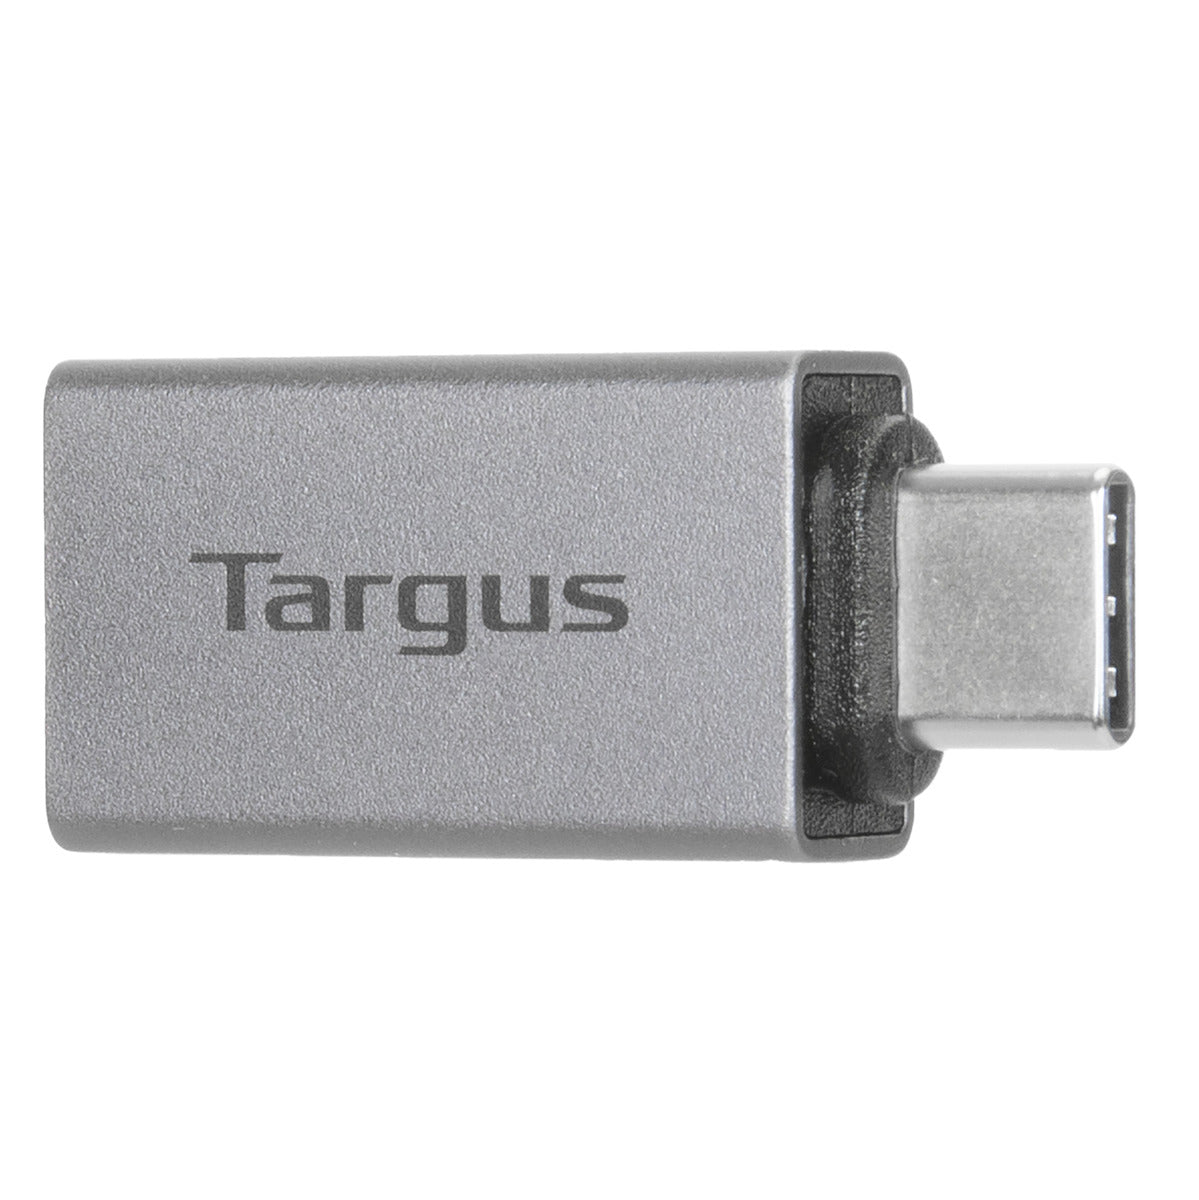 Hub USB-C multipuerto Targus - Hub USB - LDLC